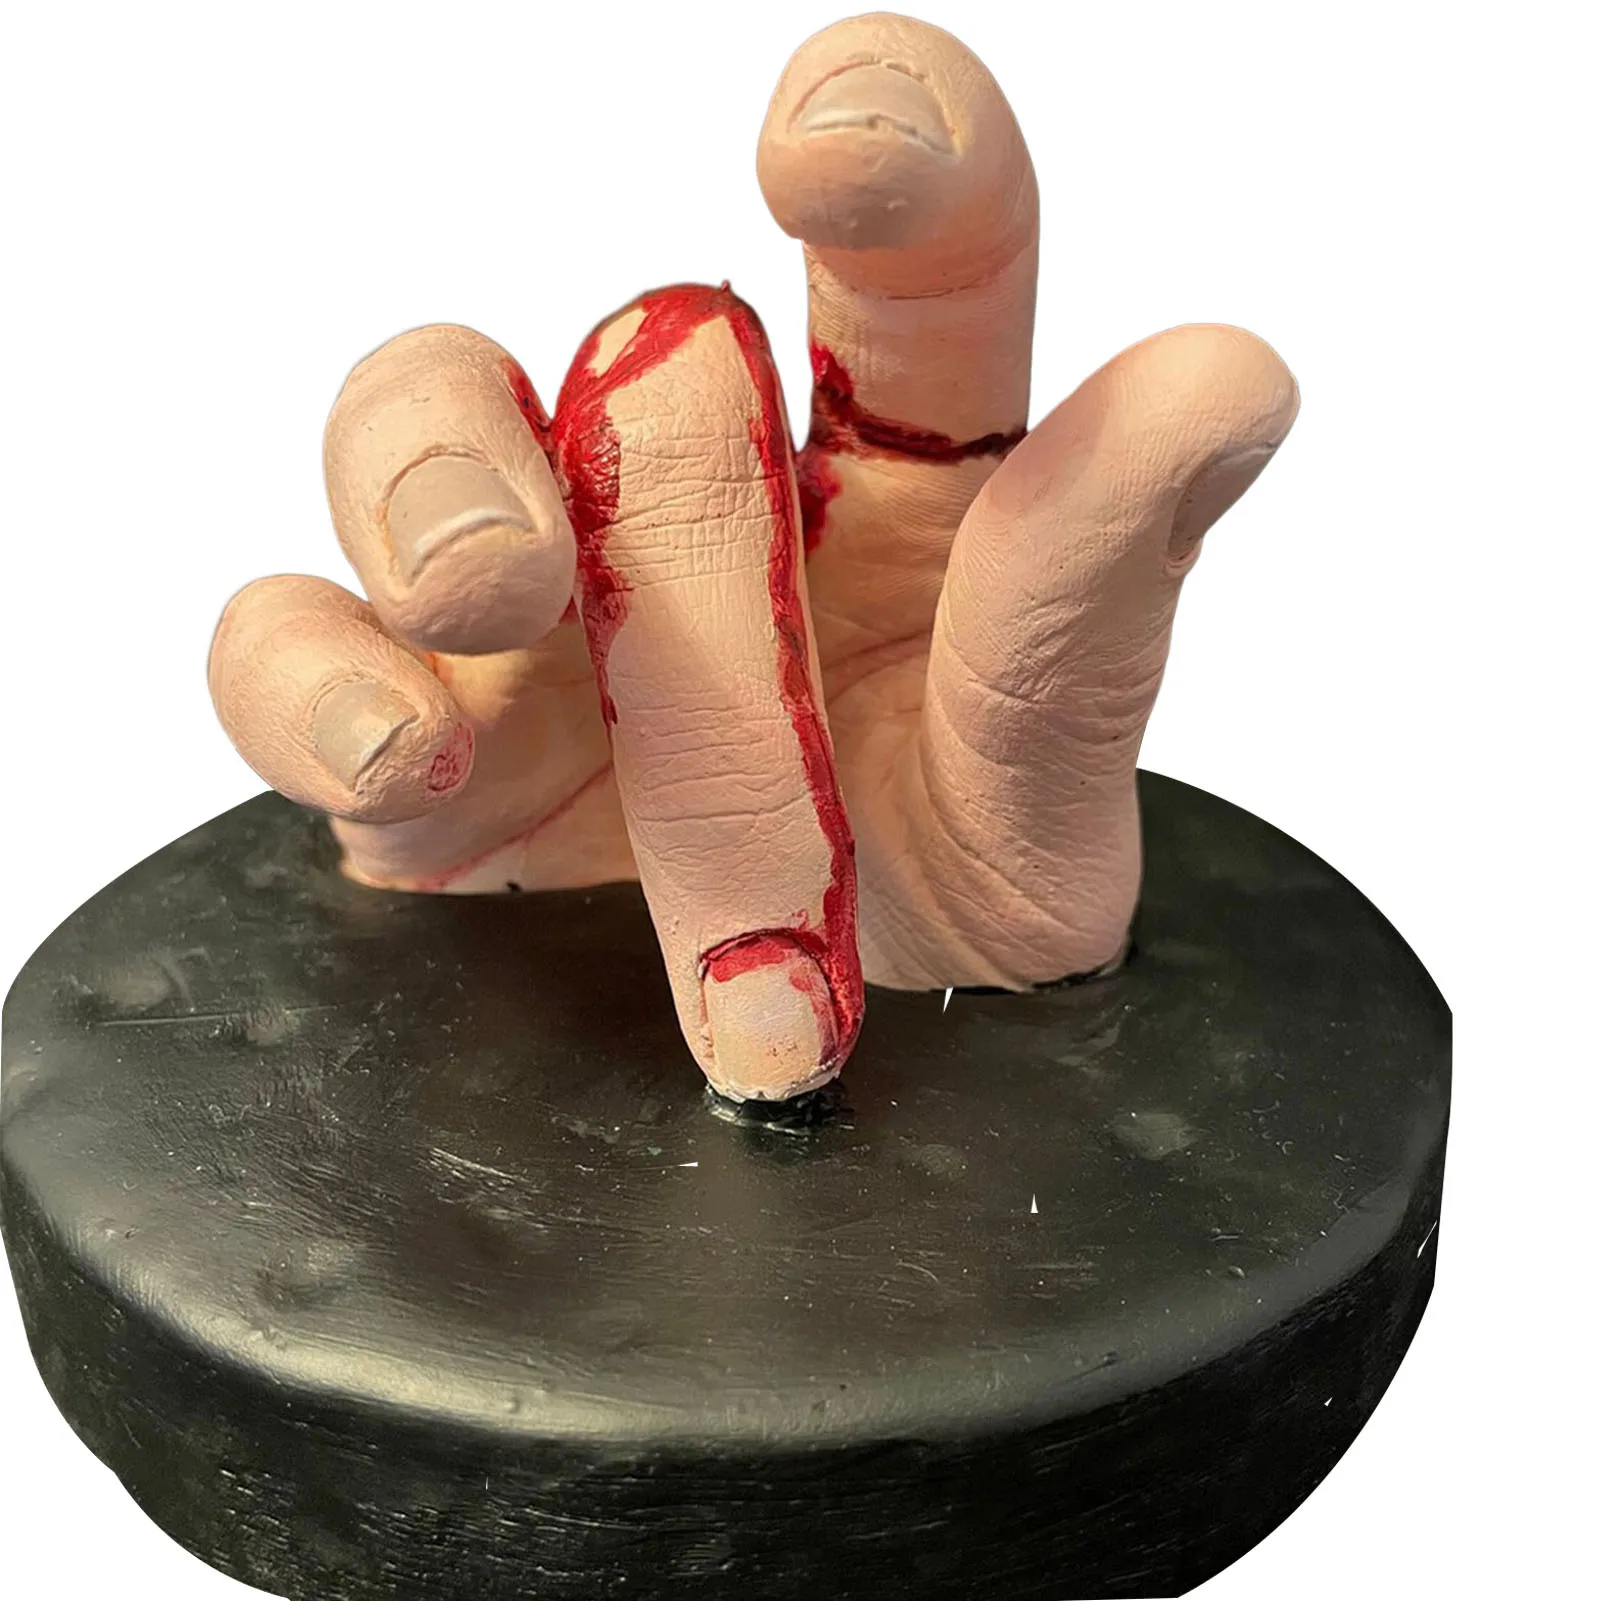 Страшная статуэтка из смолы с отрубленной рукой Реалистичная фигурка в форме руки для подарка другу семьи соседу. Изображение 3